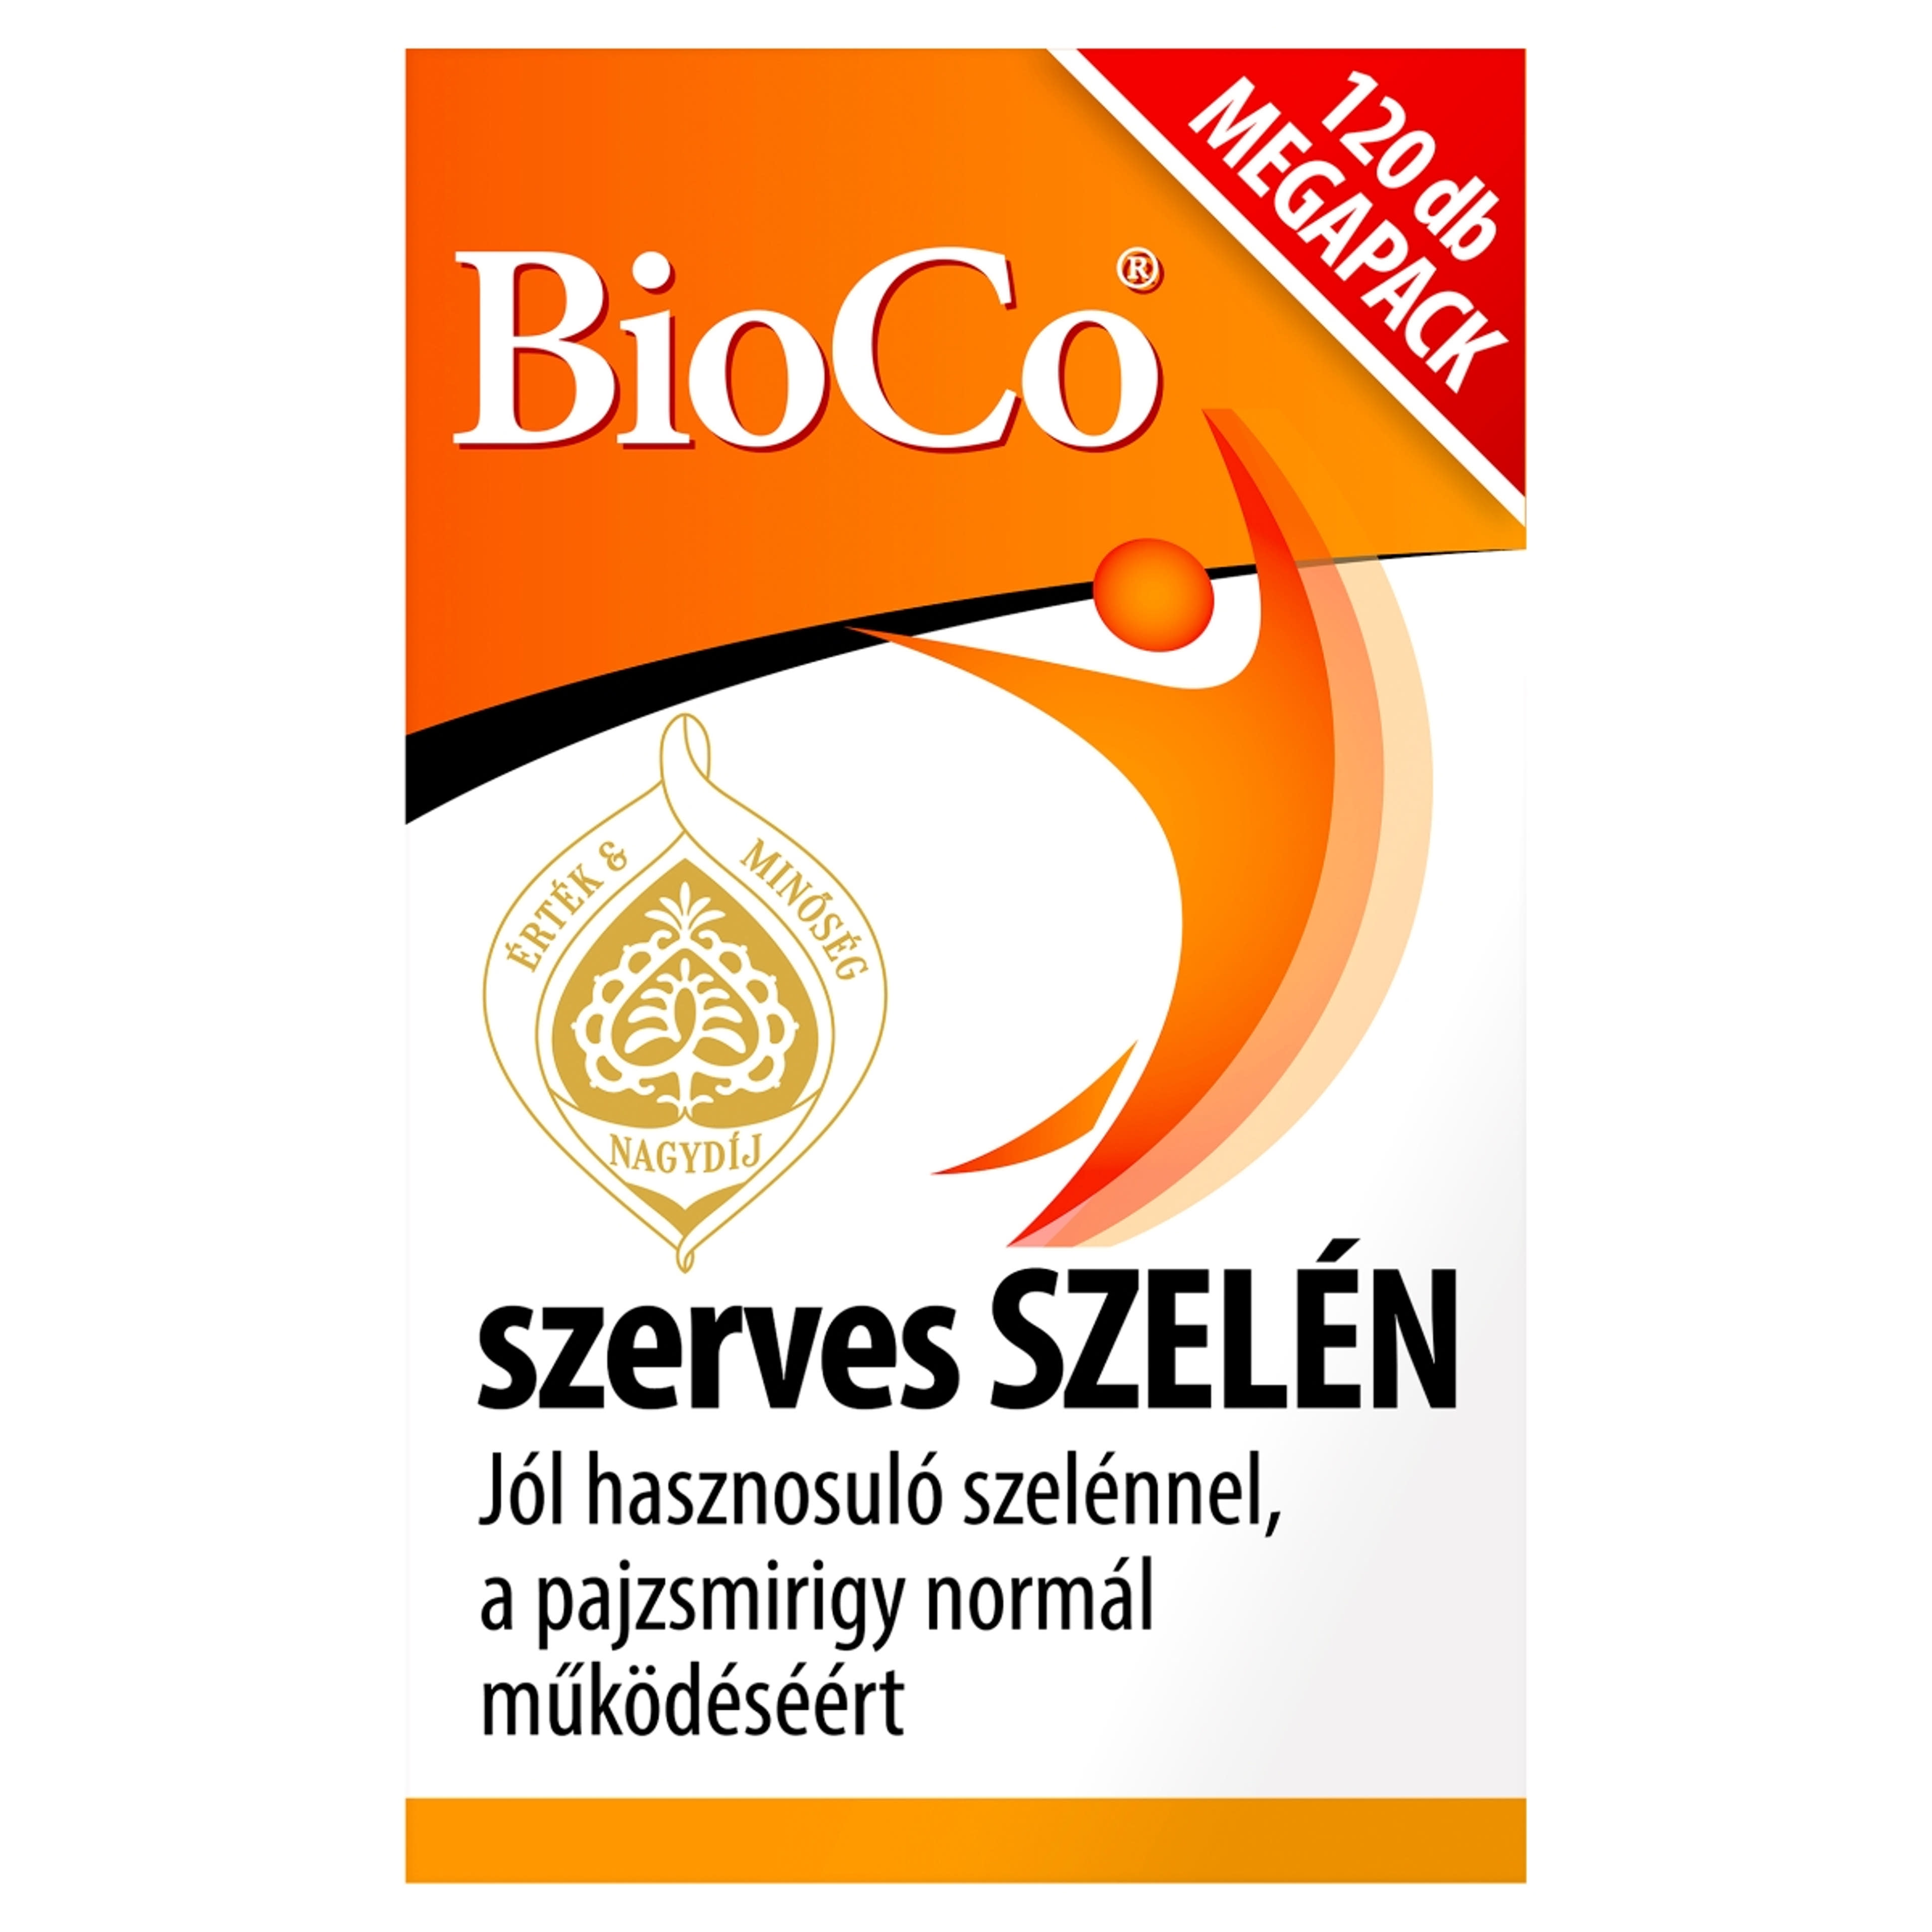 Bioco szerves szelén megapack tabletta - 120 db